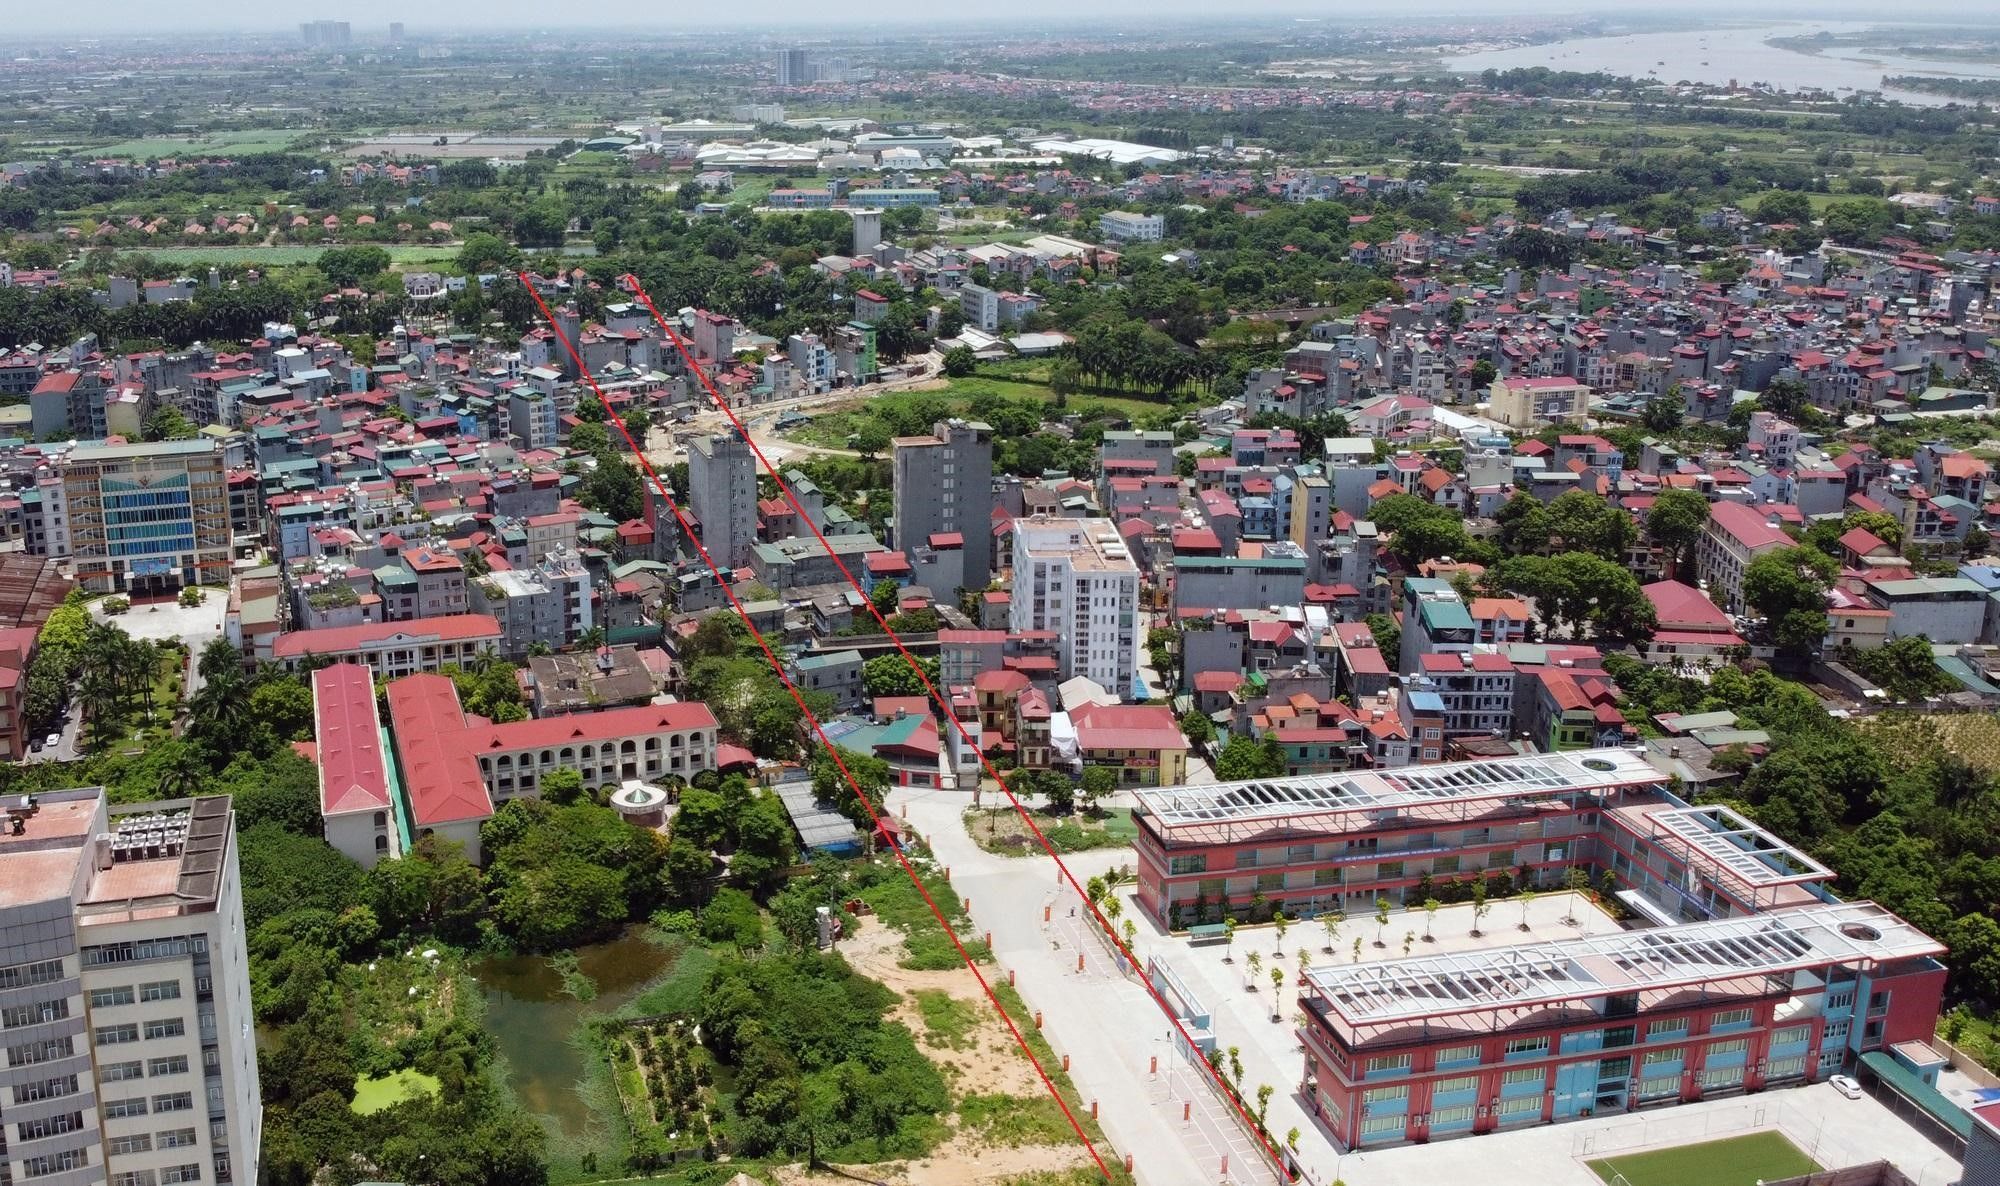 Tổng quan mua bán nhà đất chính chủ tại phường Đức Thắng, quận Bắc Từ Liêm